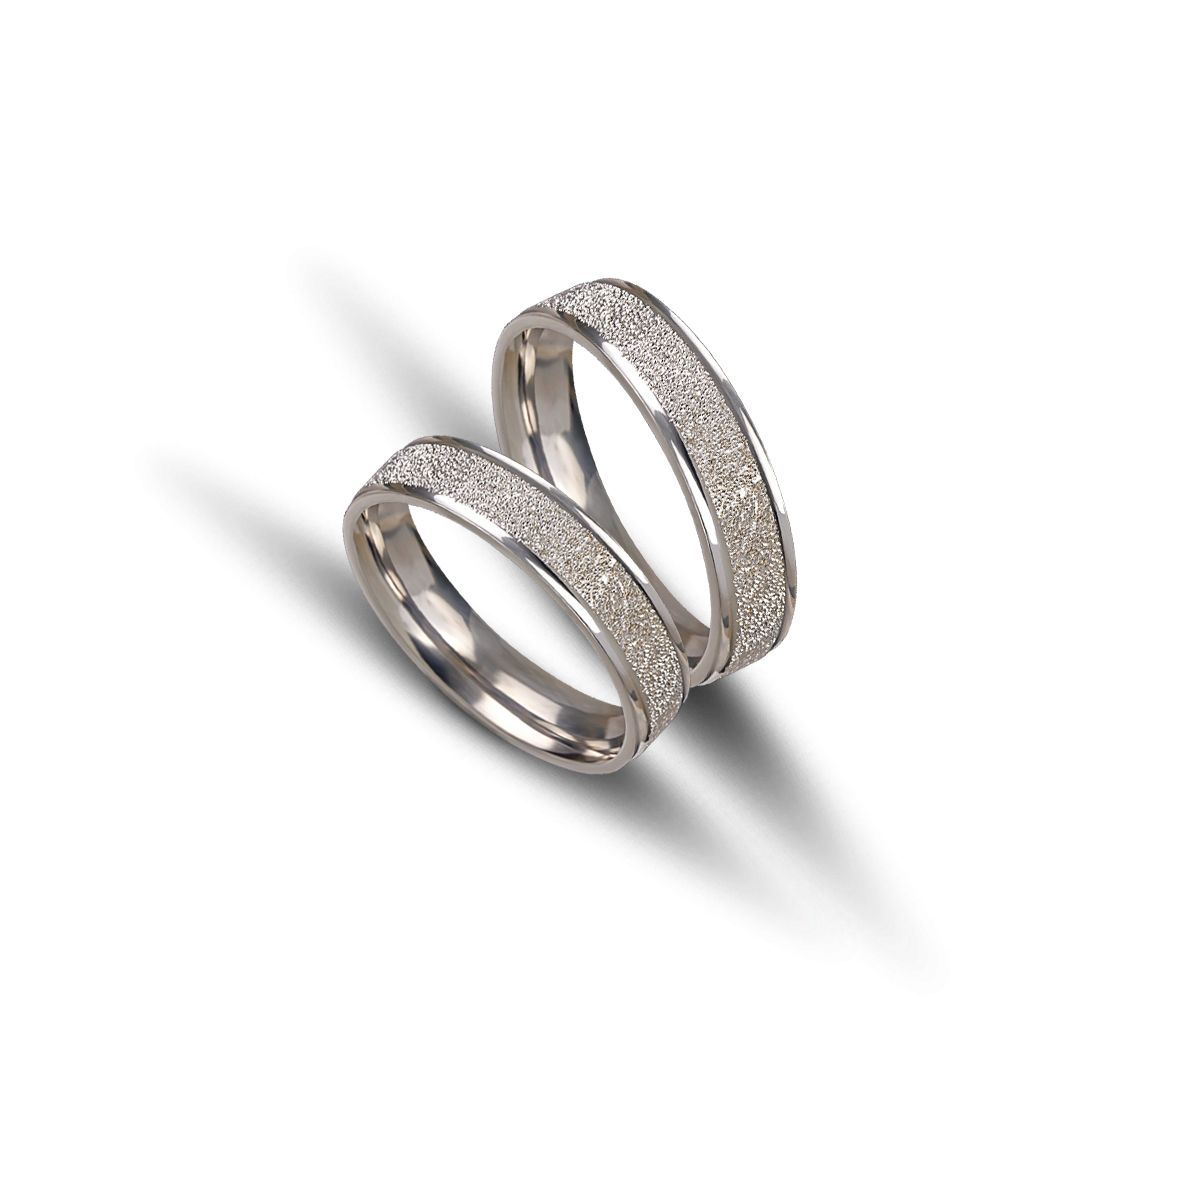 White gold wedding rings 5mm (code VK1053/50)